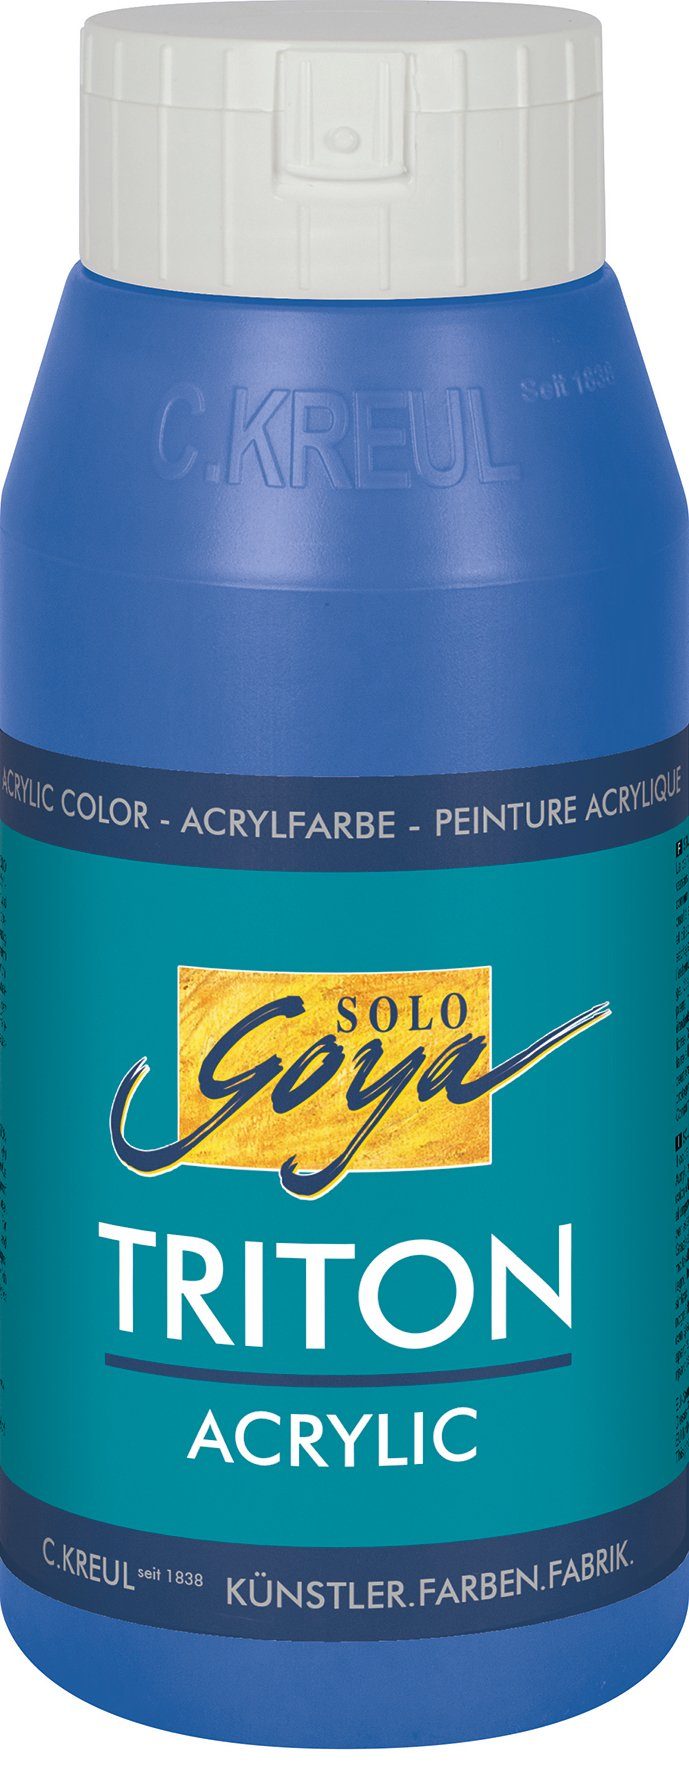 Kreul Acrylfarbe Solo Goya Triton Acrylic, 750 ml Kobaltblau